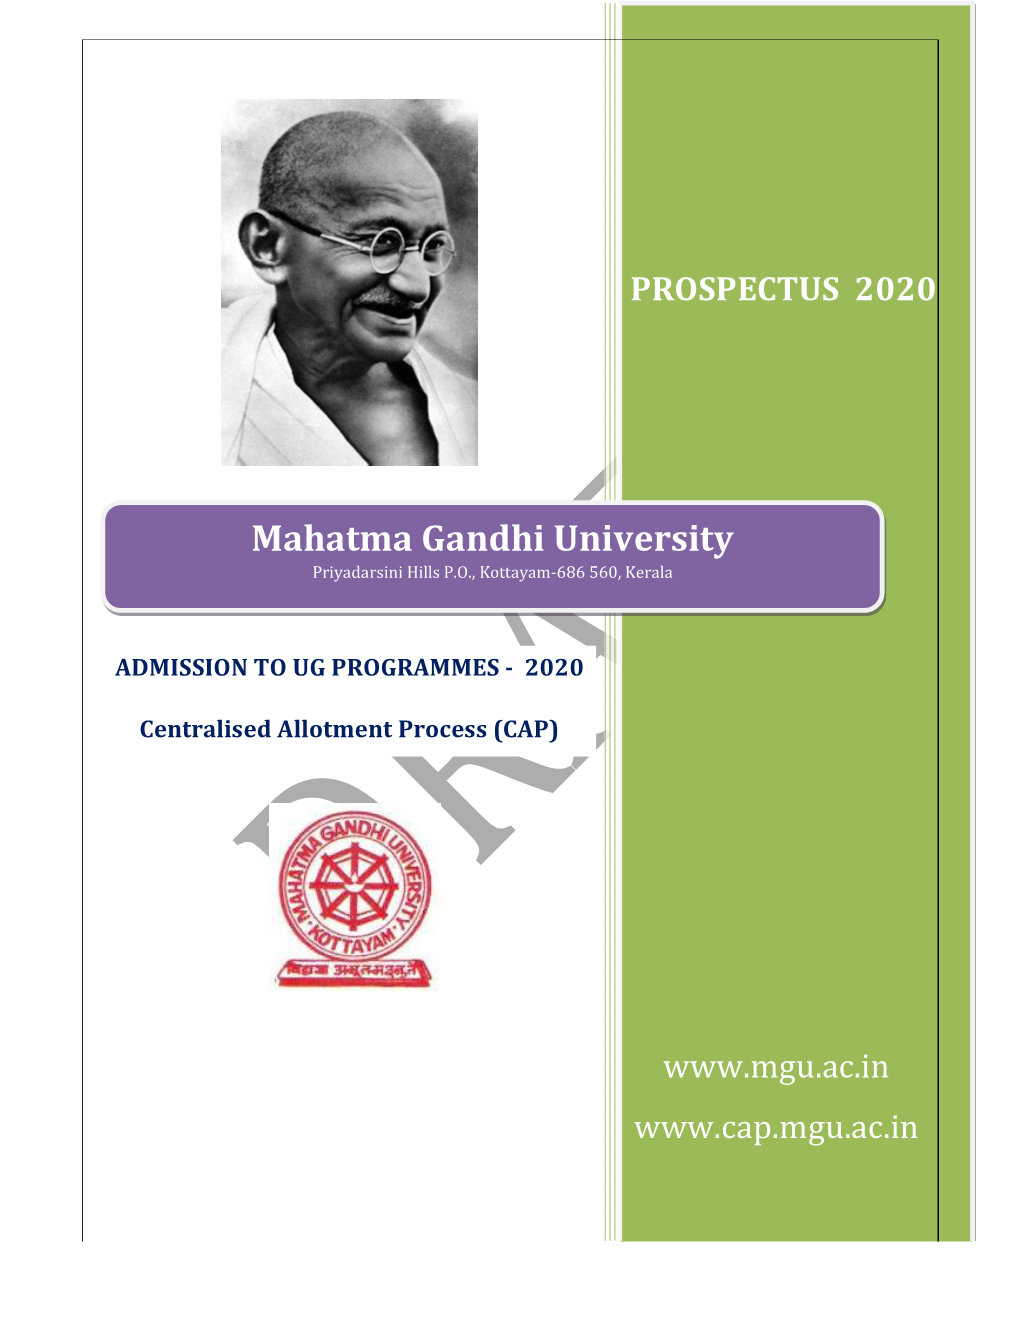 Mahatma Gandhi University Priyadarsini Hills P.O., Kottayam-686 560, Kerala